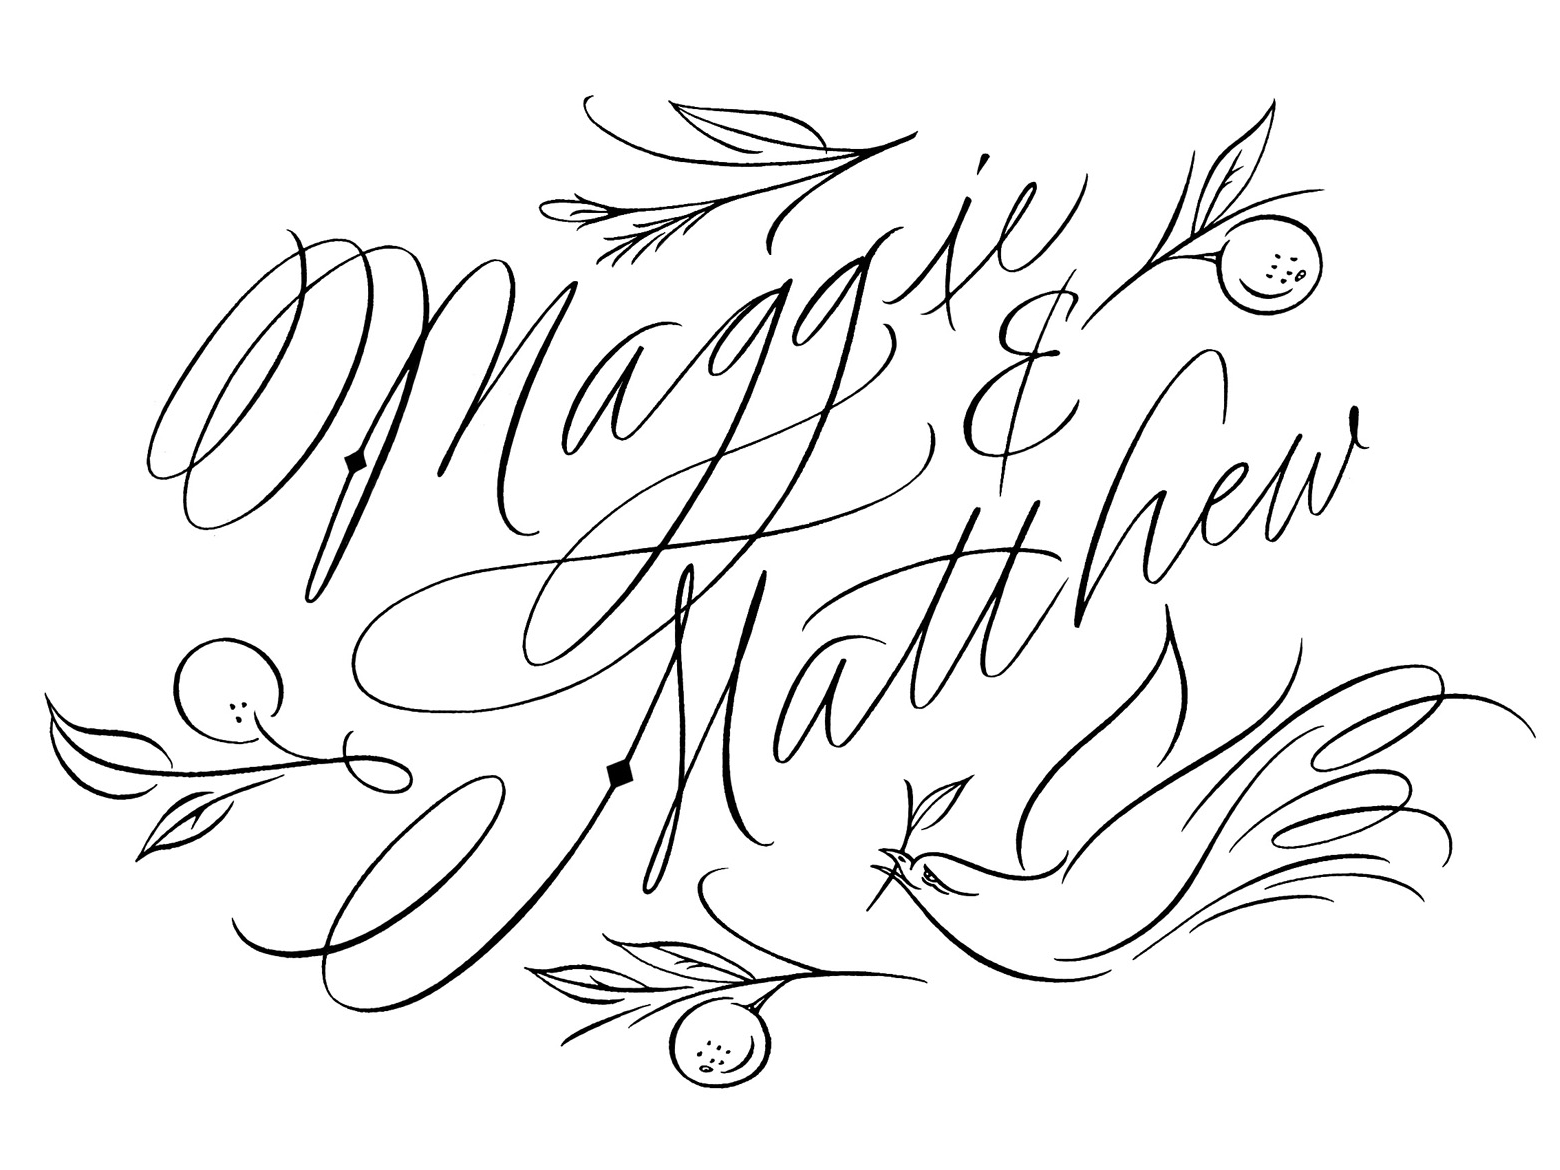 Maggie matthews